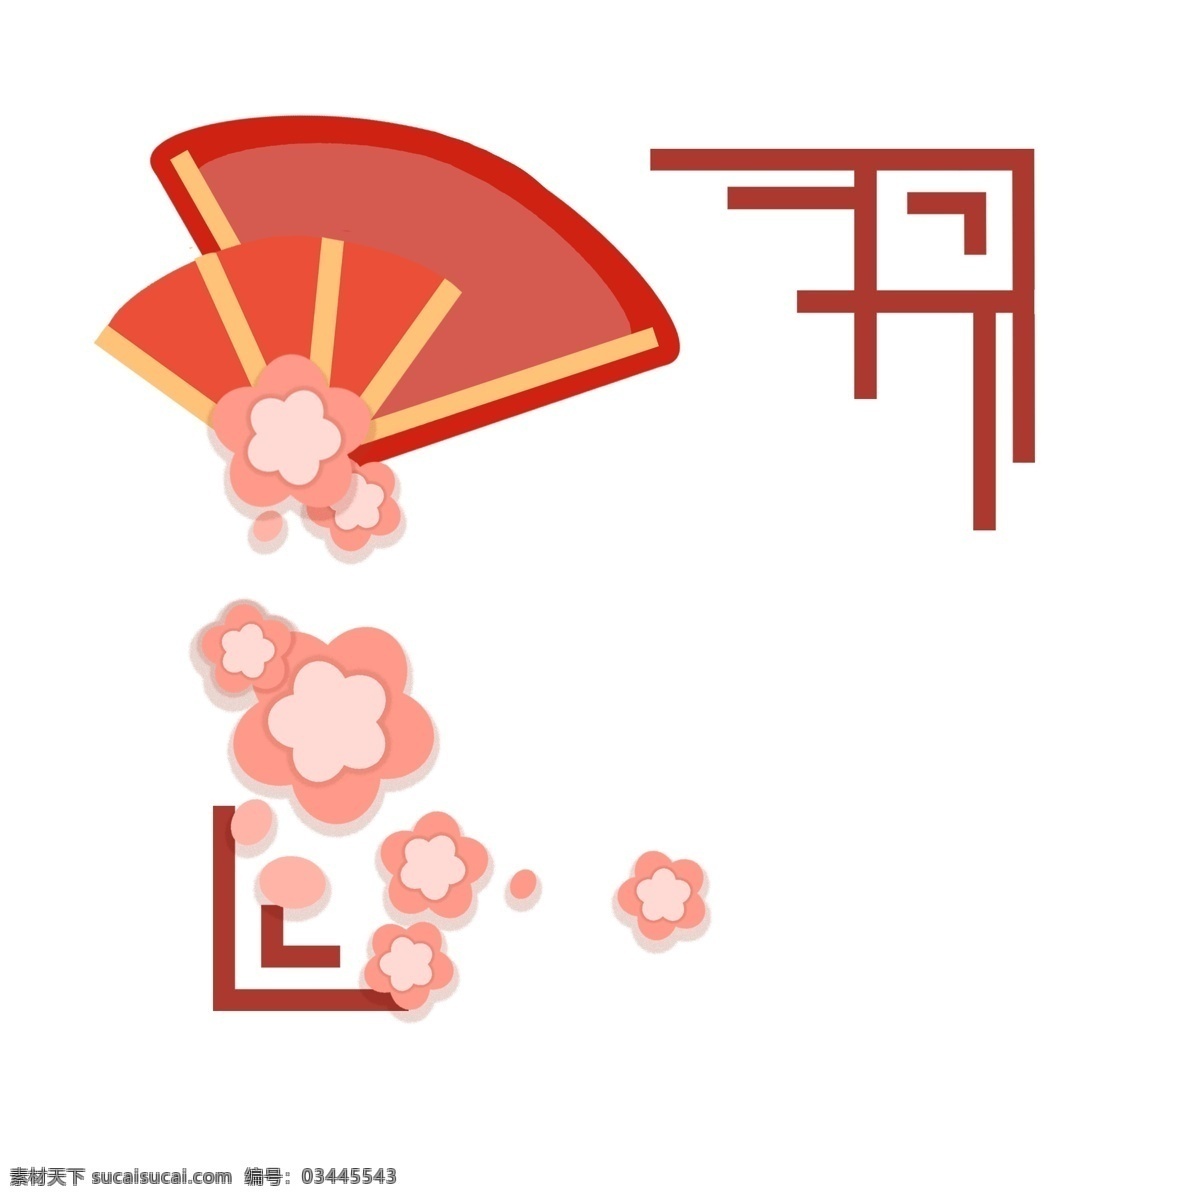 新年 扇子 边框 插画 中国风边框 唯美边框 创意边框 手绘边框 新年边框插画 红色的扇子 粉色的小花